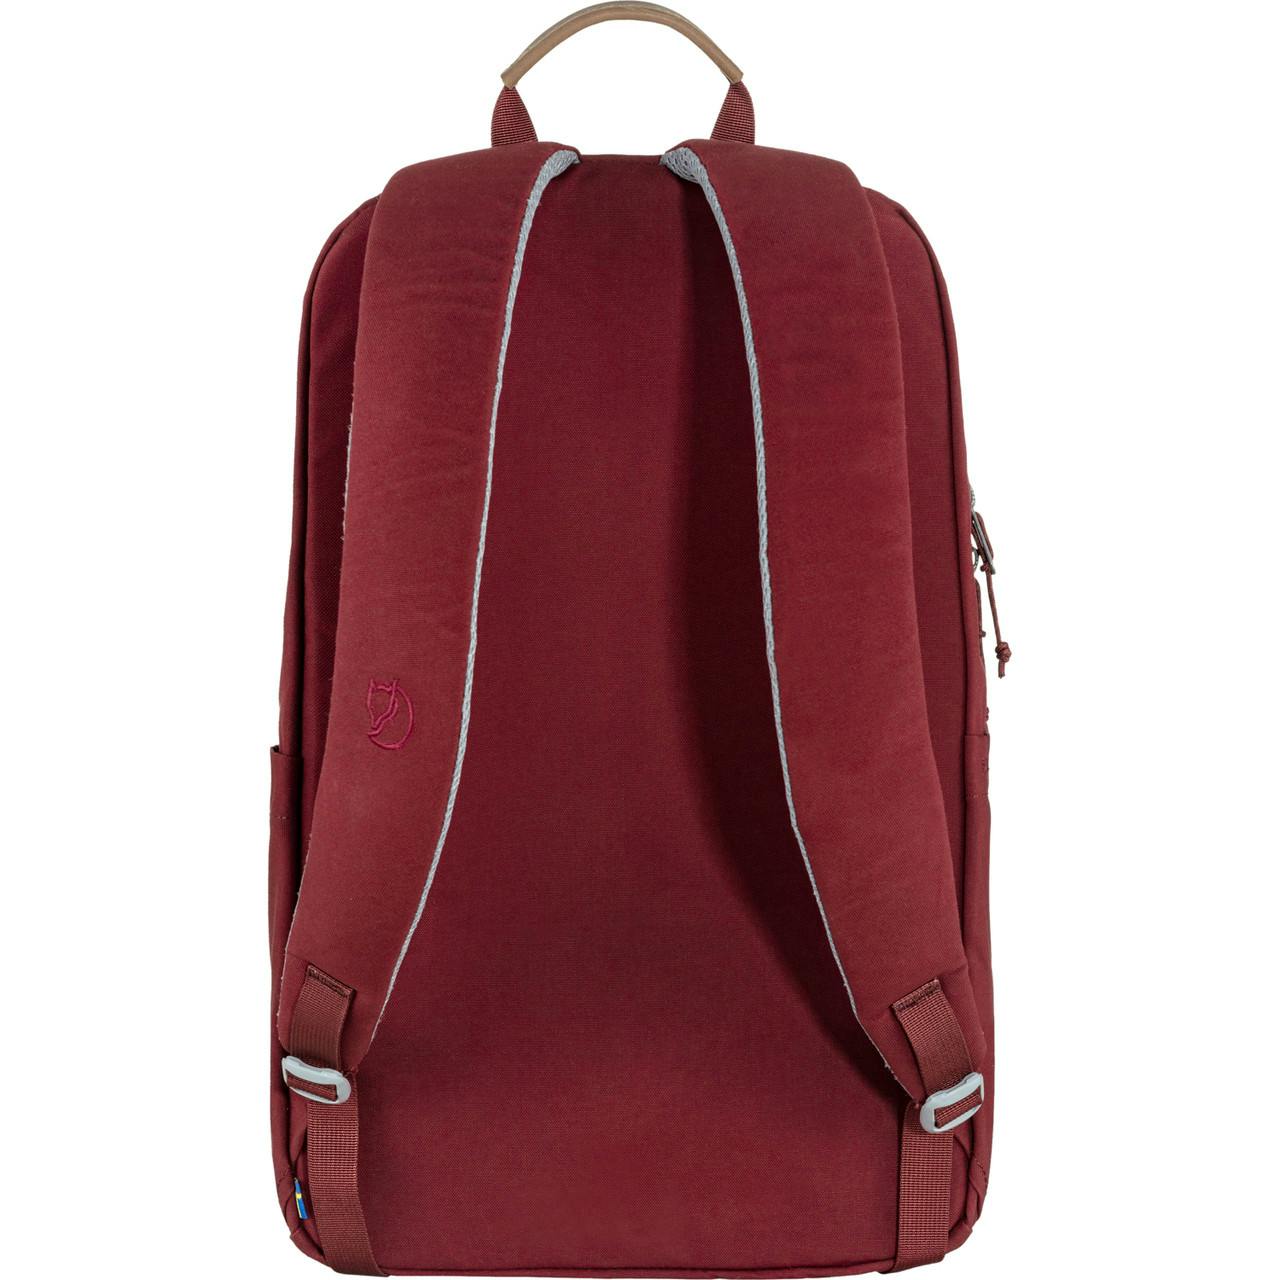 Raven 20L Backpack Bordeaux Red